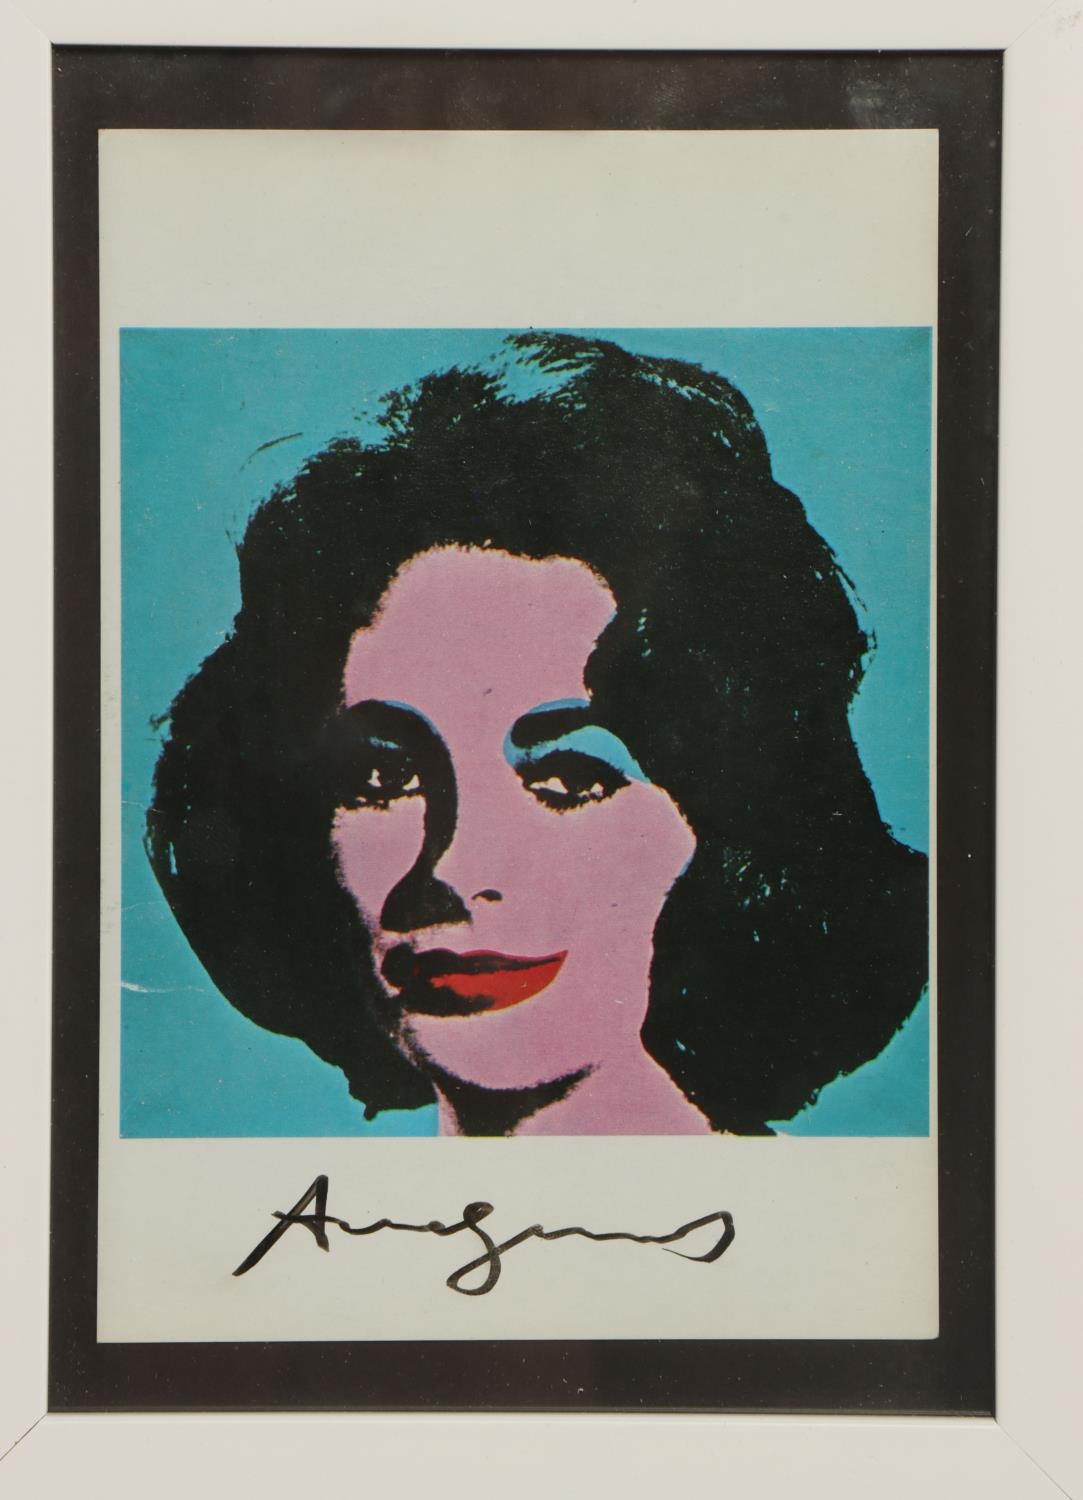 Silk screen print of Elizabeth Taylor by Andy Warhol by Andy Warhol, 1963